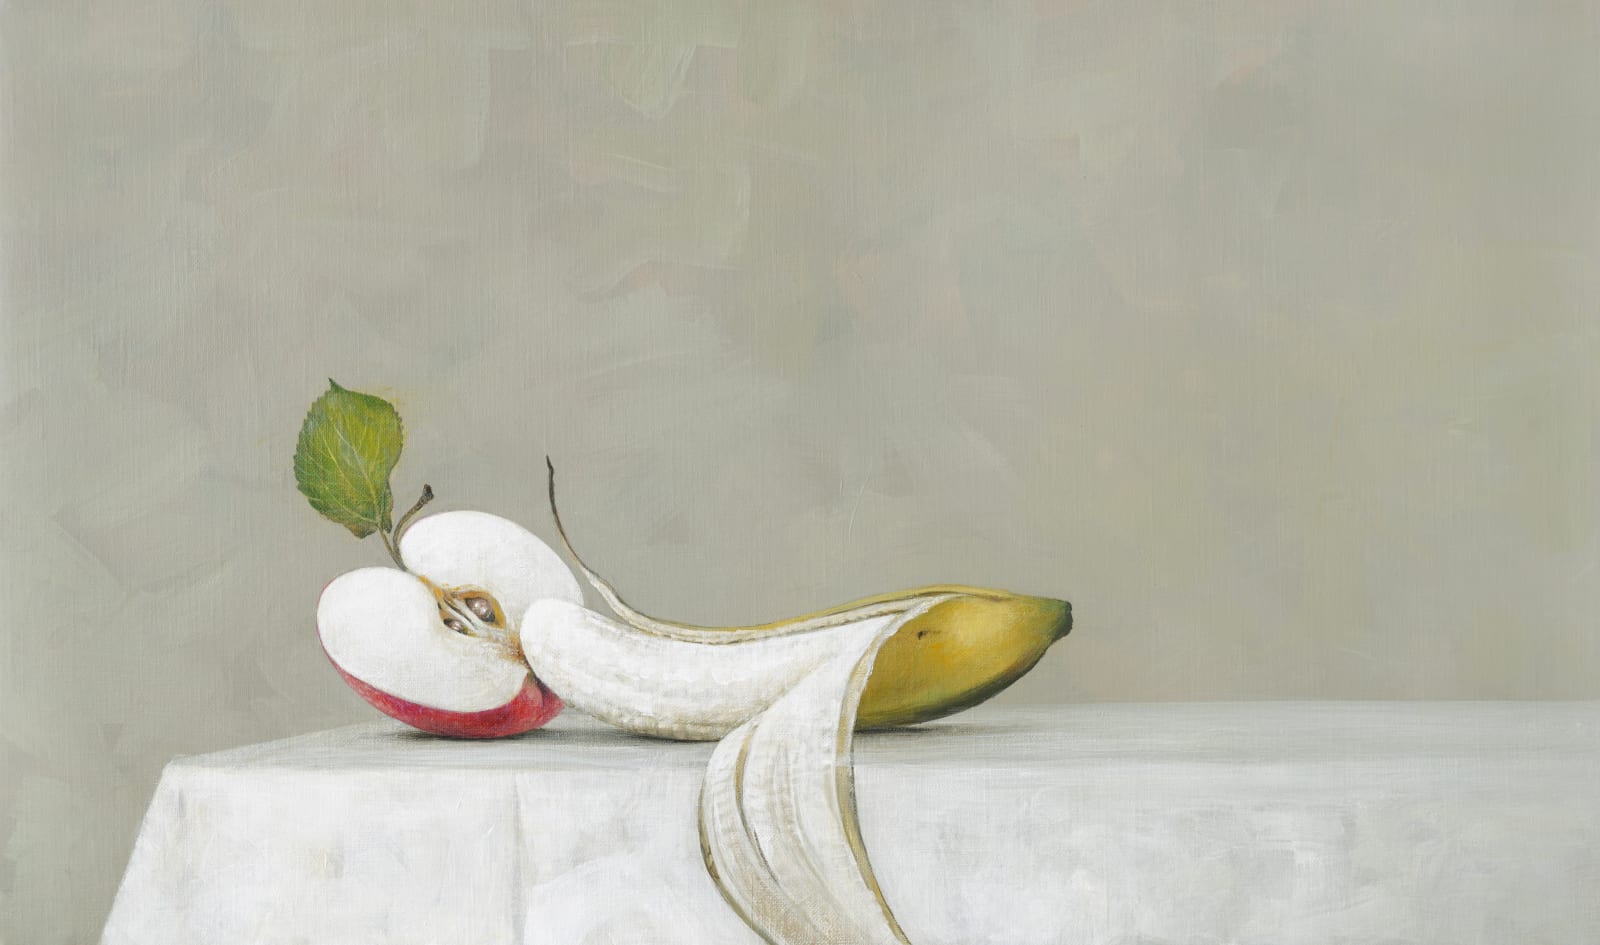 Ahmad Zakii Anwar Banana And Apple 2020 Sapar Contemporary